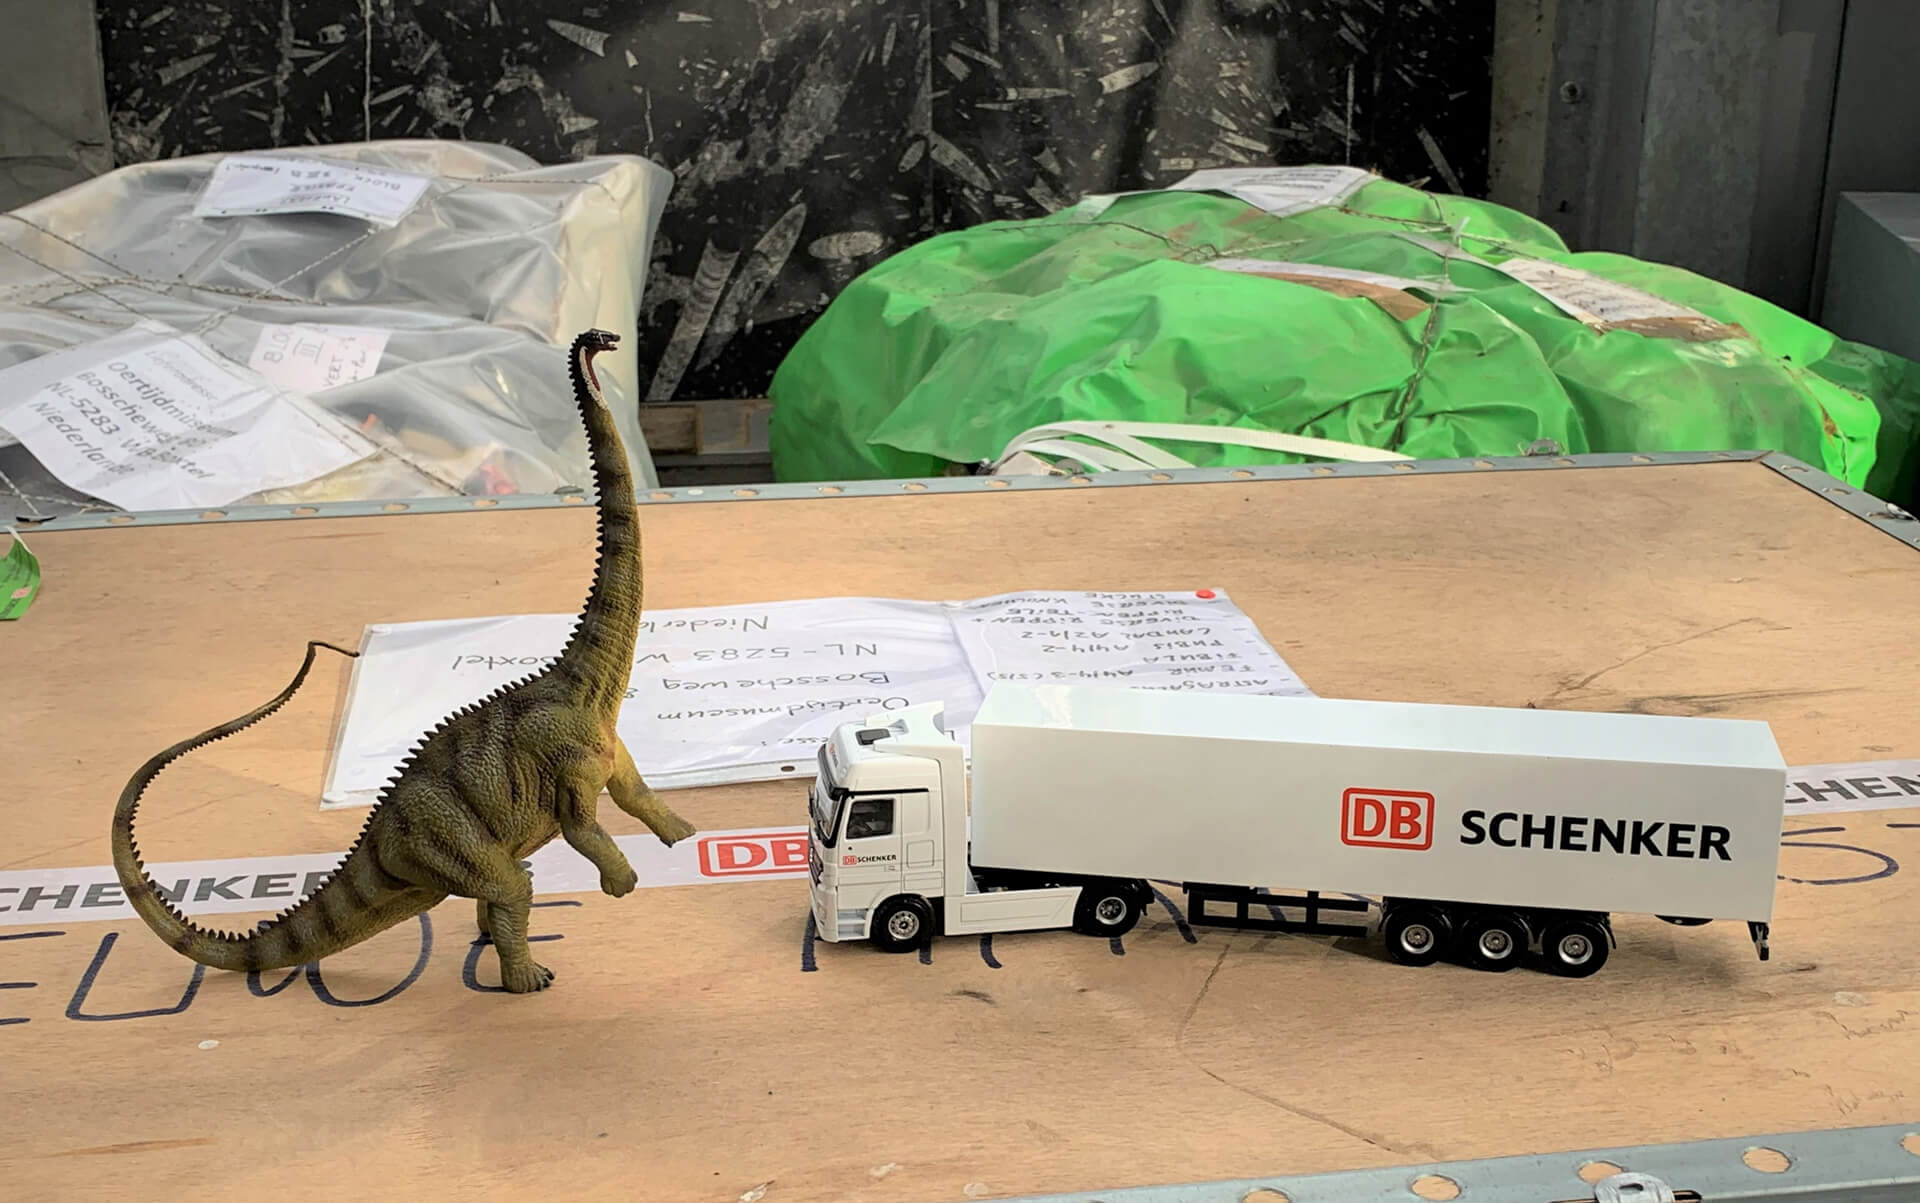 Wie passt ein Dinosaurier in eine LKW